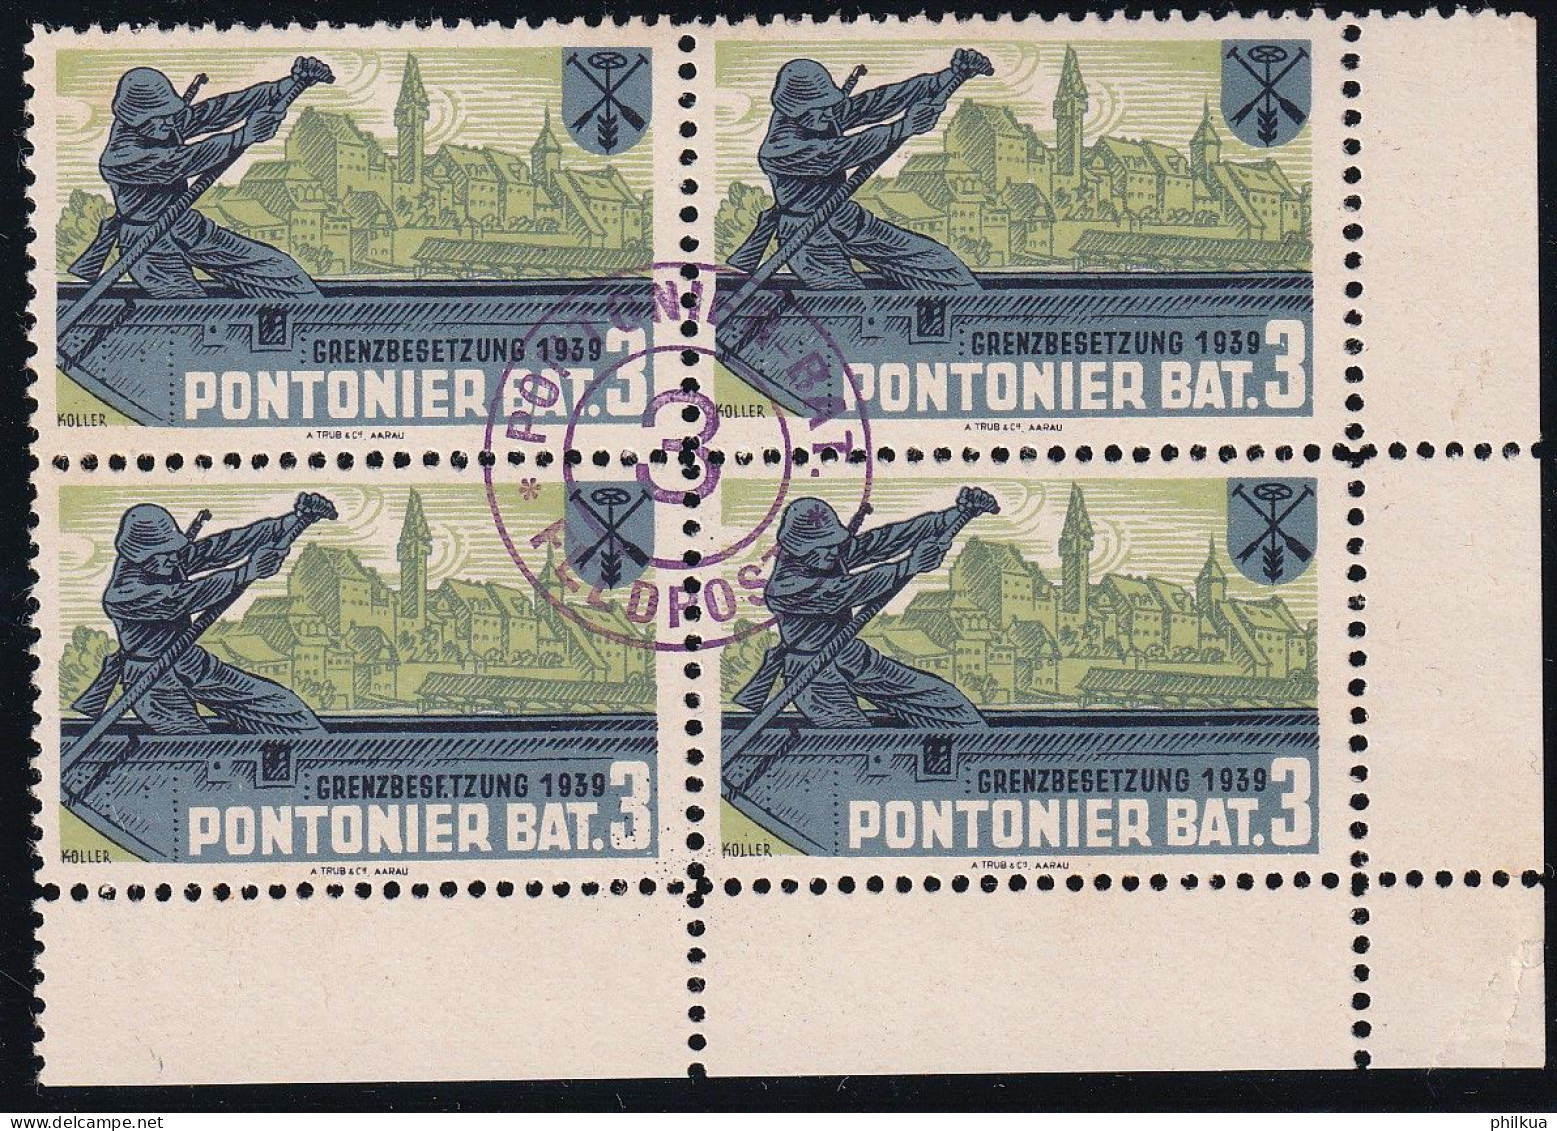 Pontoniere 27 Gezähnter Vierer Block - Pontonier Bat. 3 - Mit Truppemstempel - Postfrisch/**/MNH - Etichette